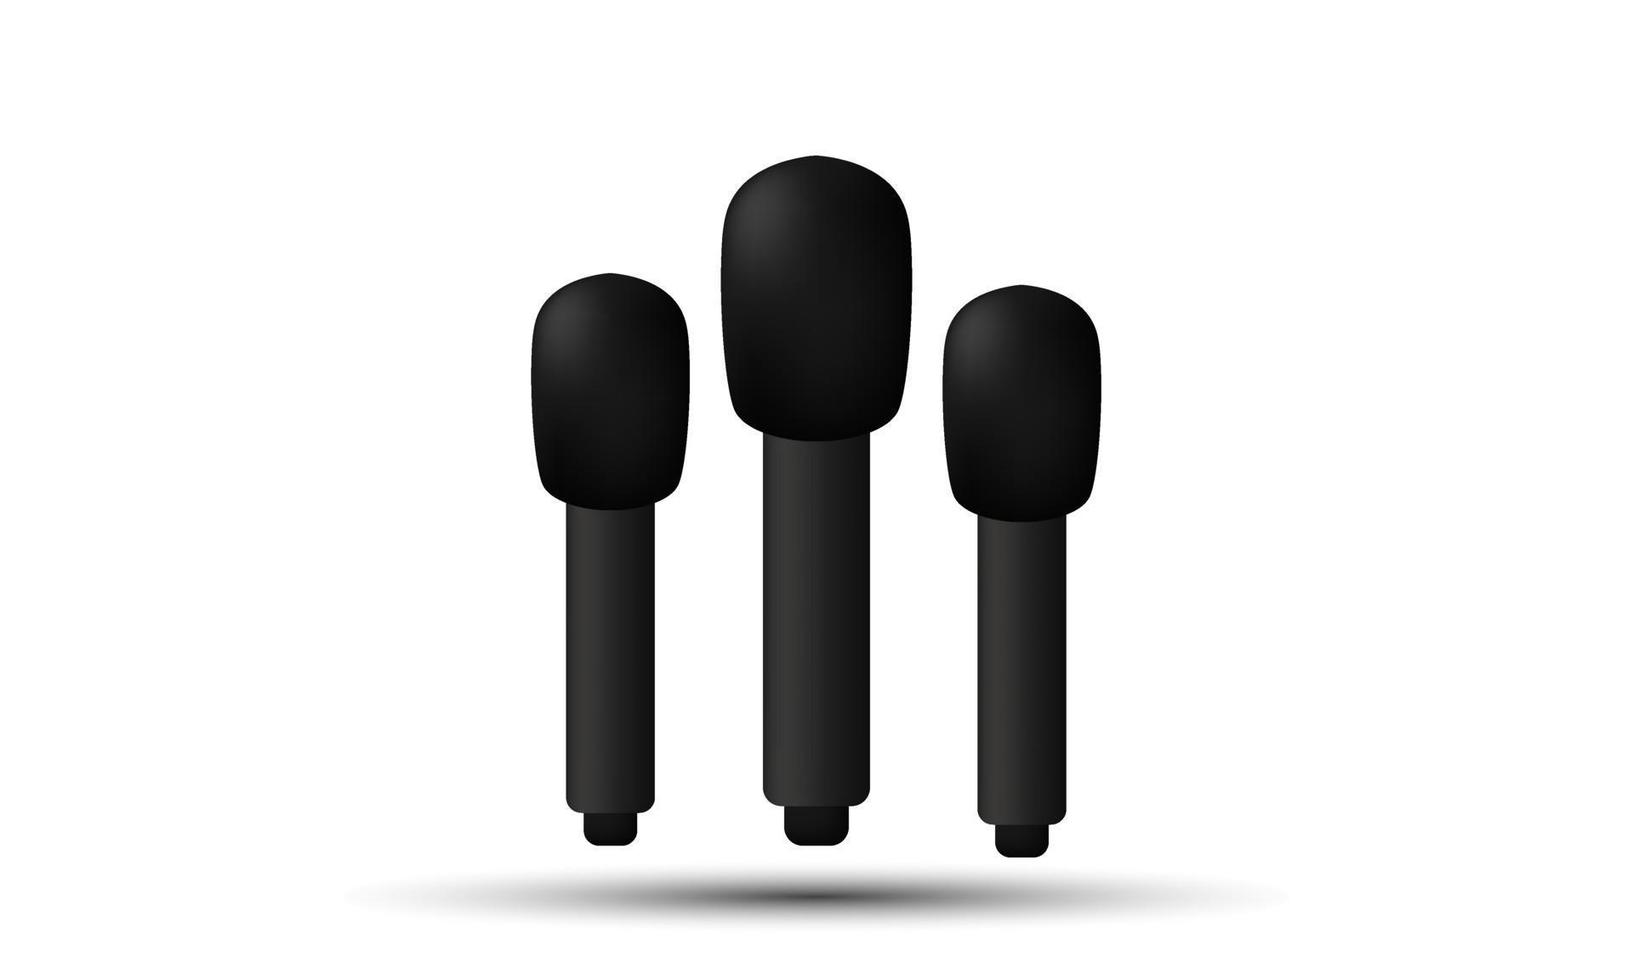 unika realistiska mikrofoner 3d isolerade på vektor